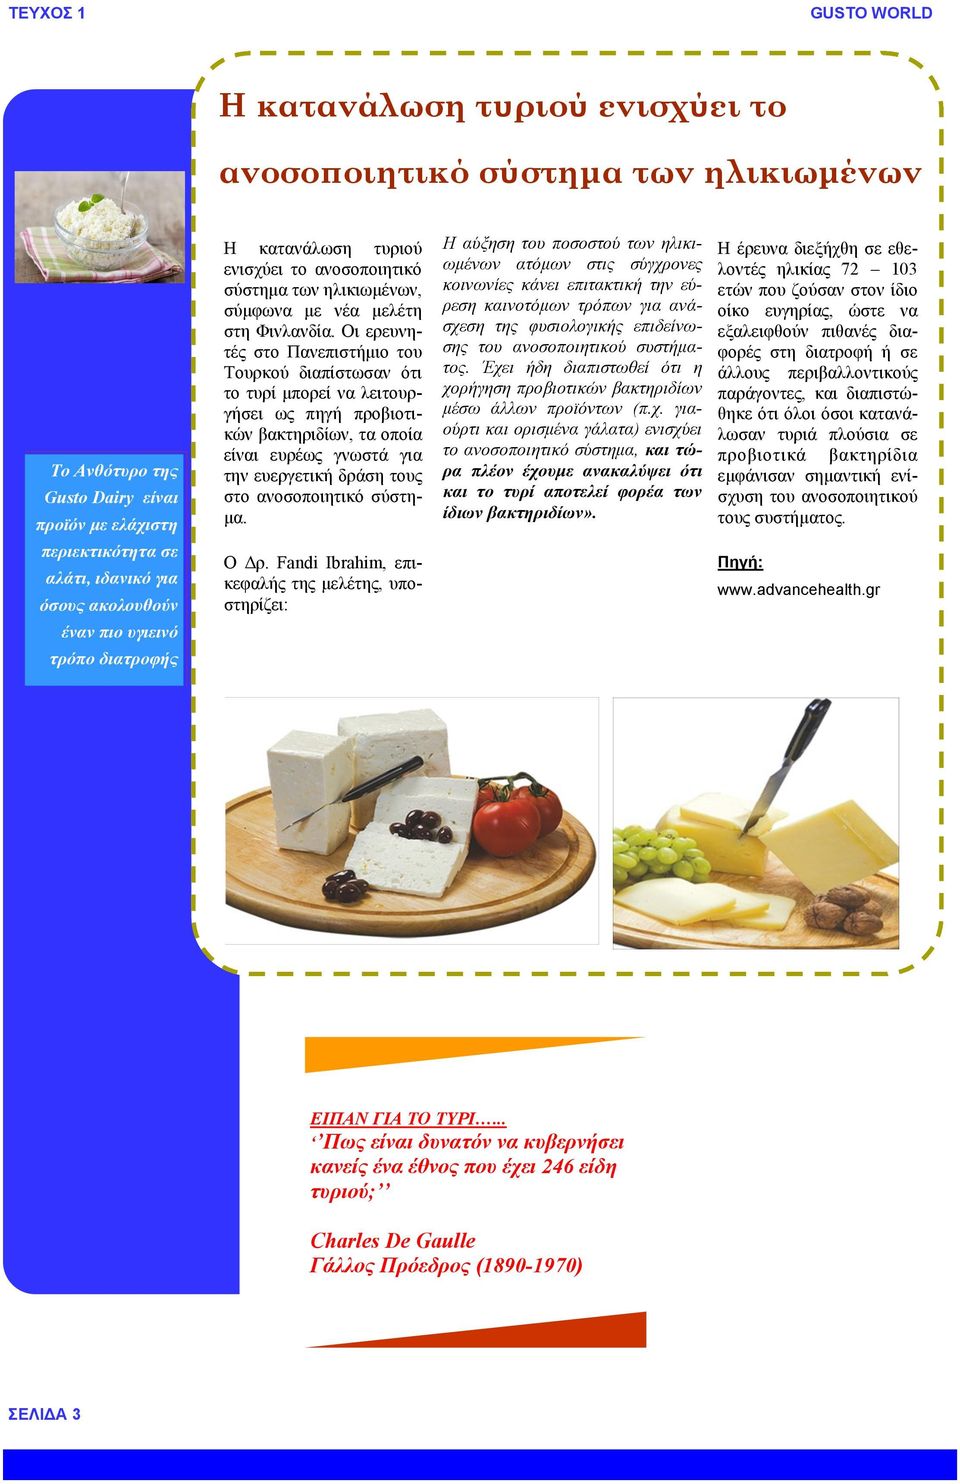 Οι ερευνητές στο Πανεπιστήμιο του Τουρκού διαπίστωσαν ότι το τυρί μπορεί να λειτουργήσει ως πηγή προβιοτικών βακτηριδίων, τα οποία είναι ευρέως γνωστά για την ευεργετική δράση τους στο ανοσοποιητικό